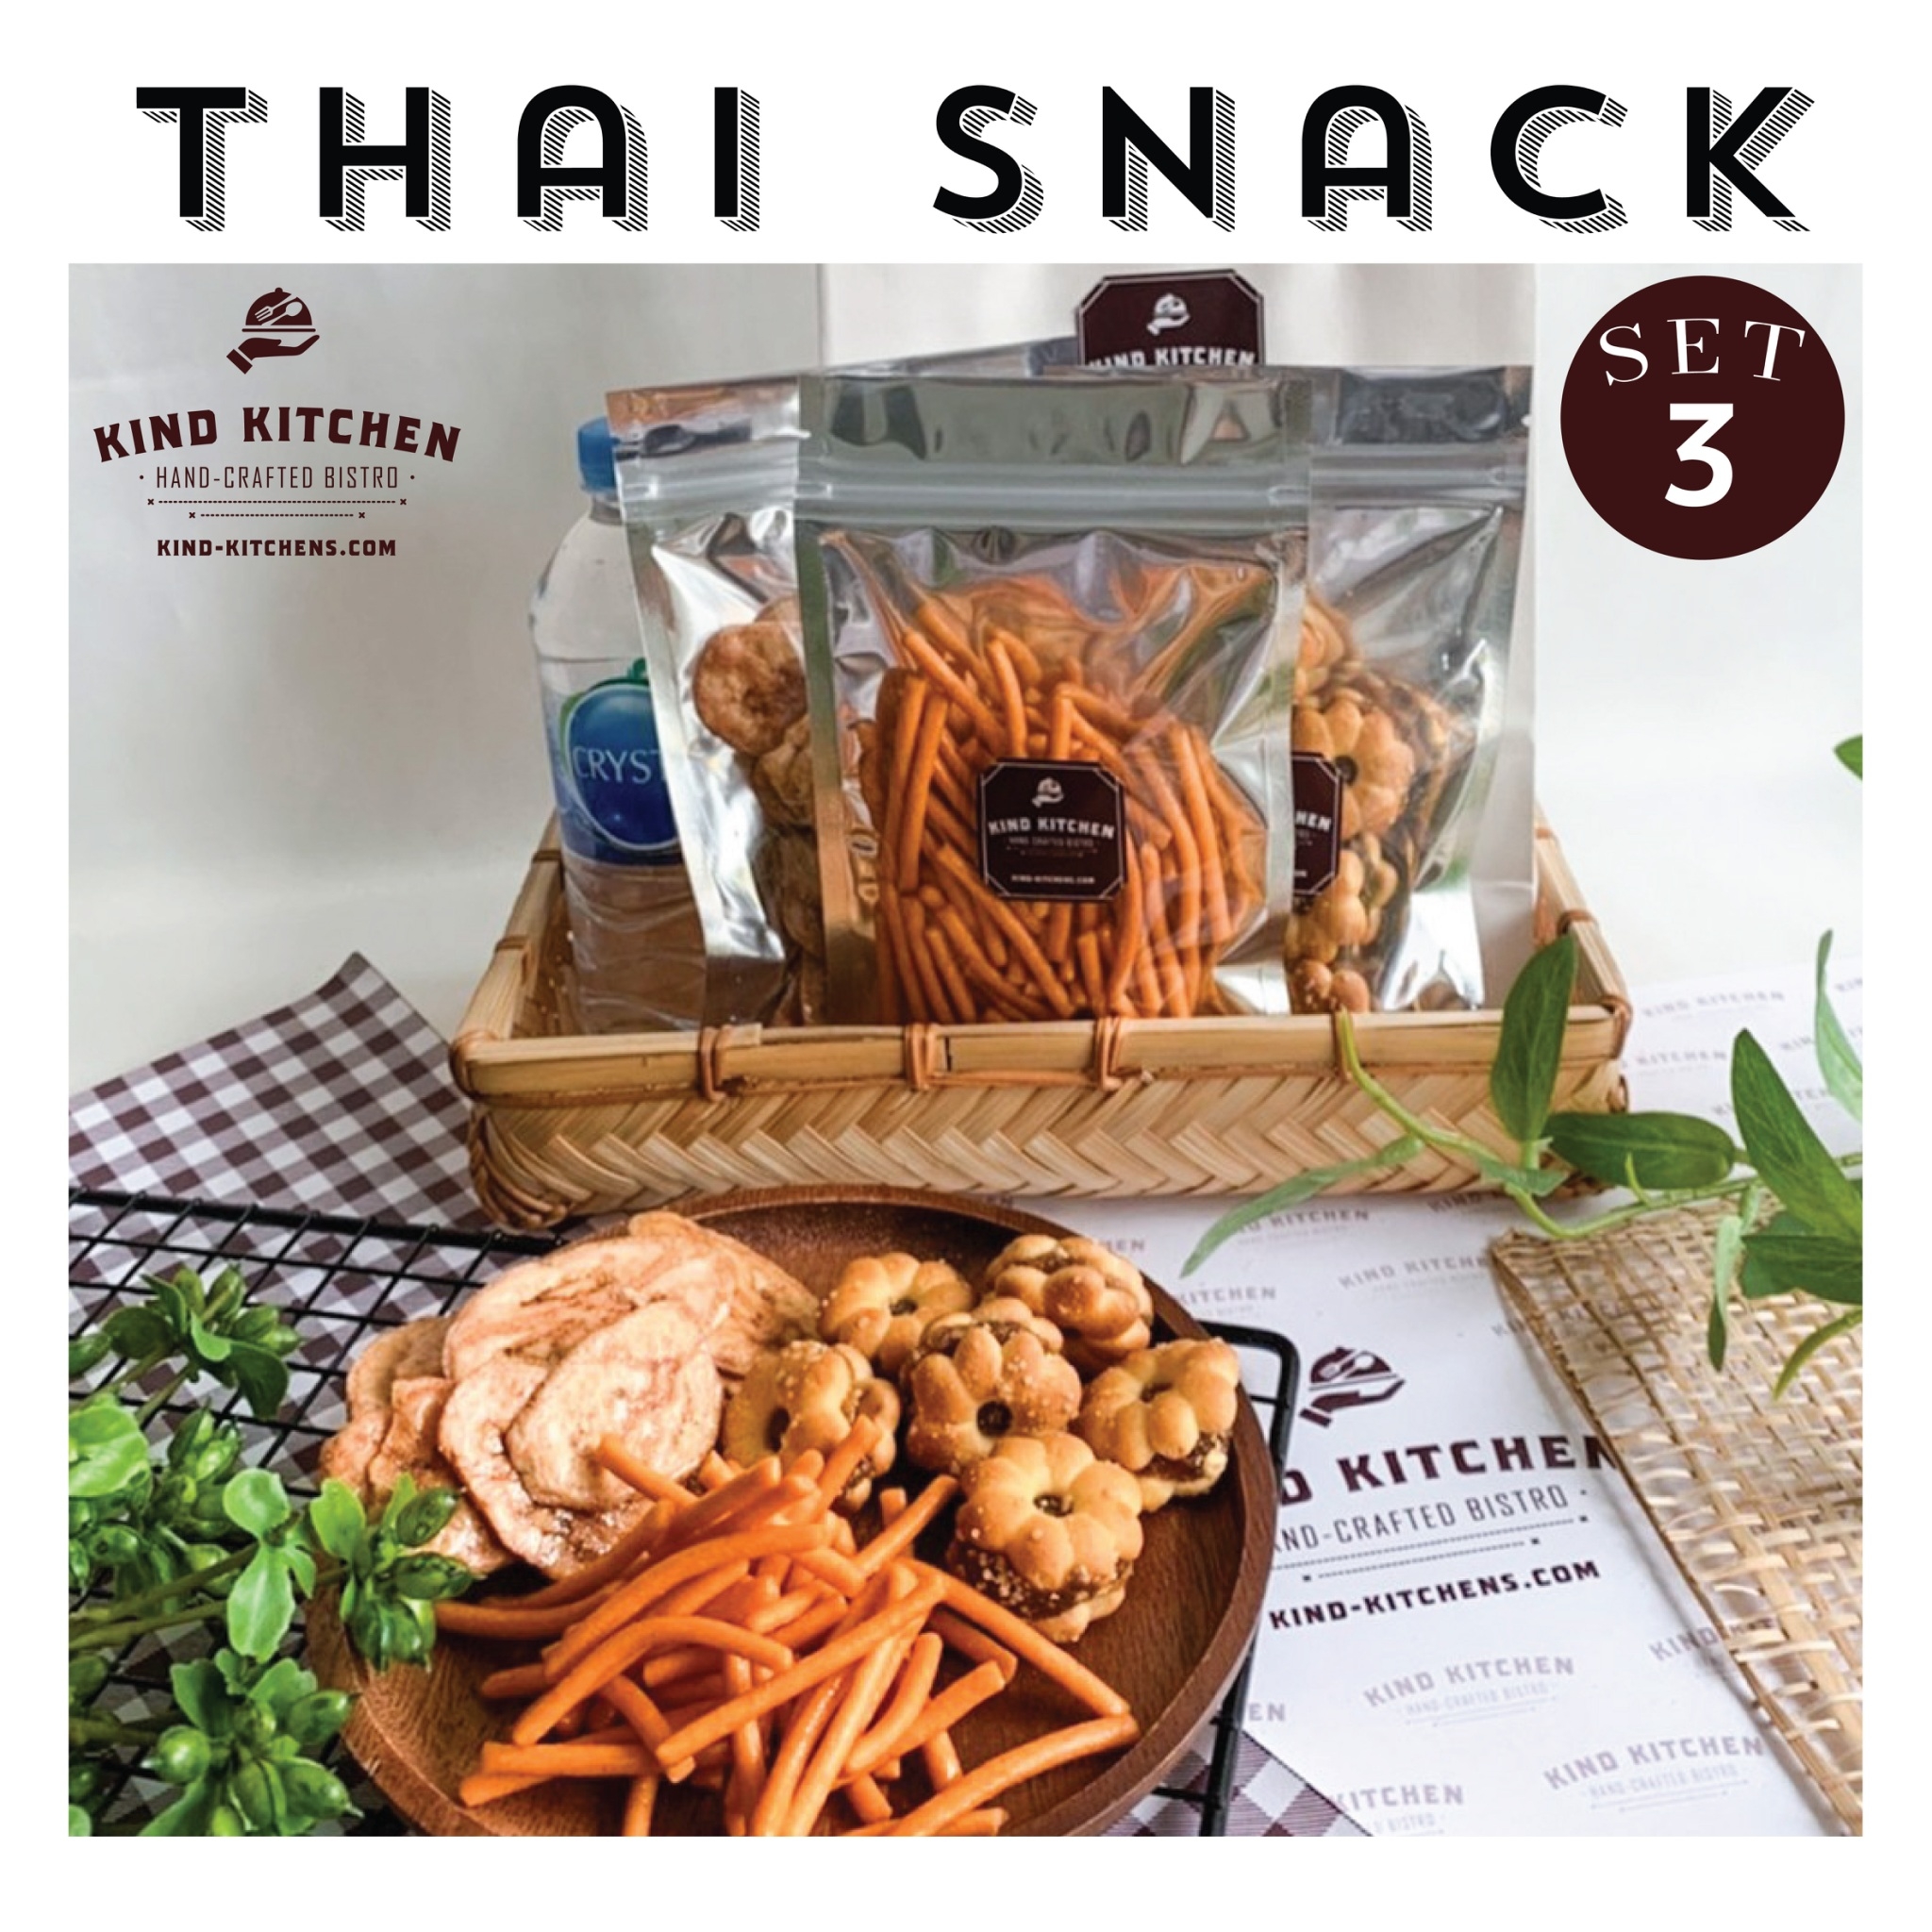 ขนมอบกรอบ Thai Snack 3 ชนิด พร้อมน้ำและถุง Set 3 (เลือกขนมได้ 3 ชนิด)